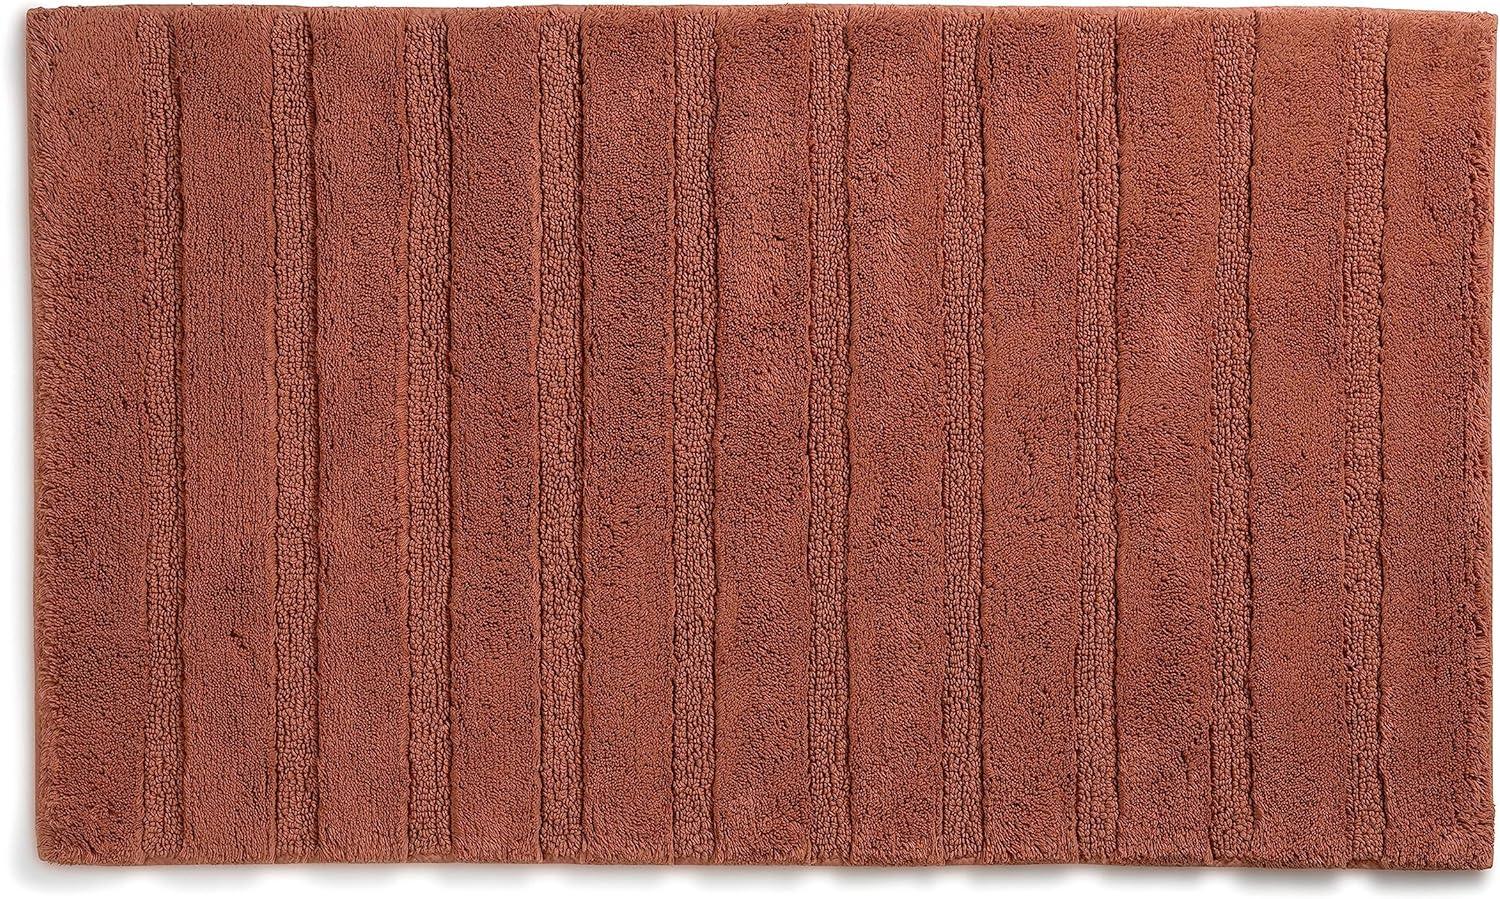 Kela Badematte Megan, 100 cm x 60 cm, 100% Baumwolle, Terra, rutschhemmend, waschbar bis 30° C, geeignet für Fußbodenheizung, 23590 Bild 1